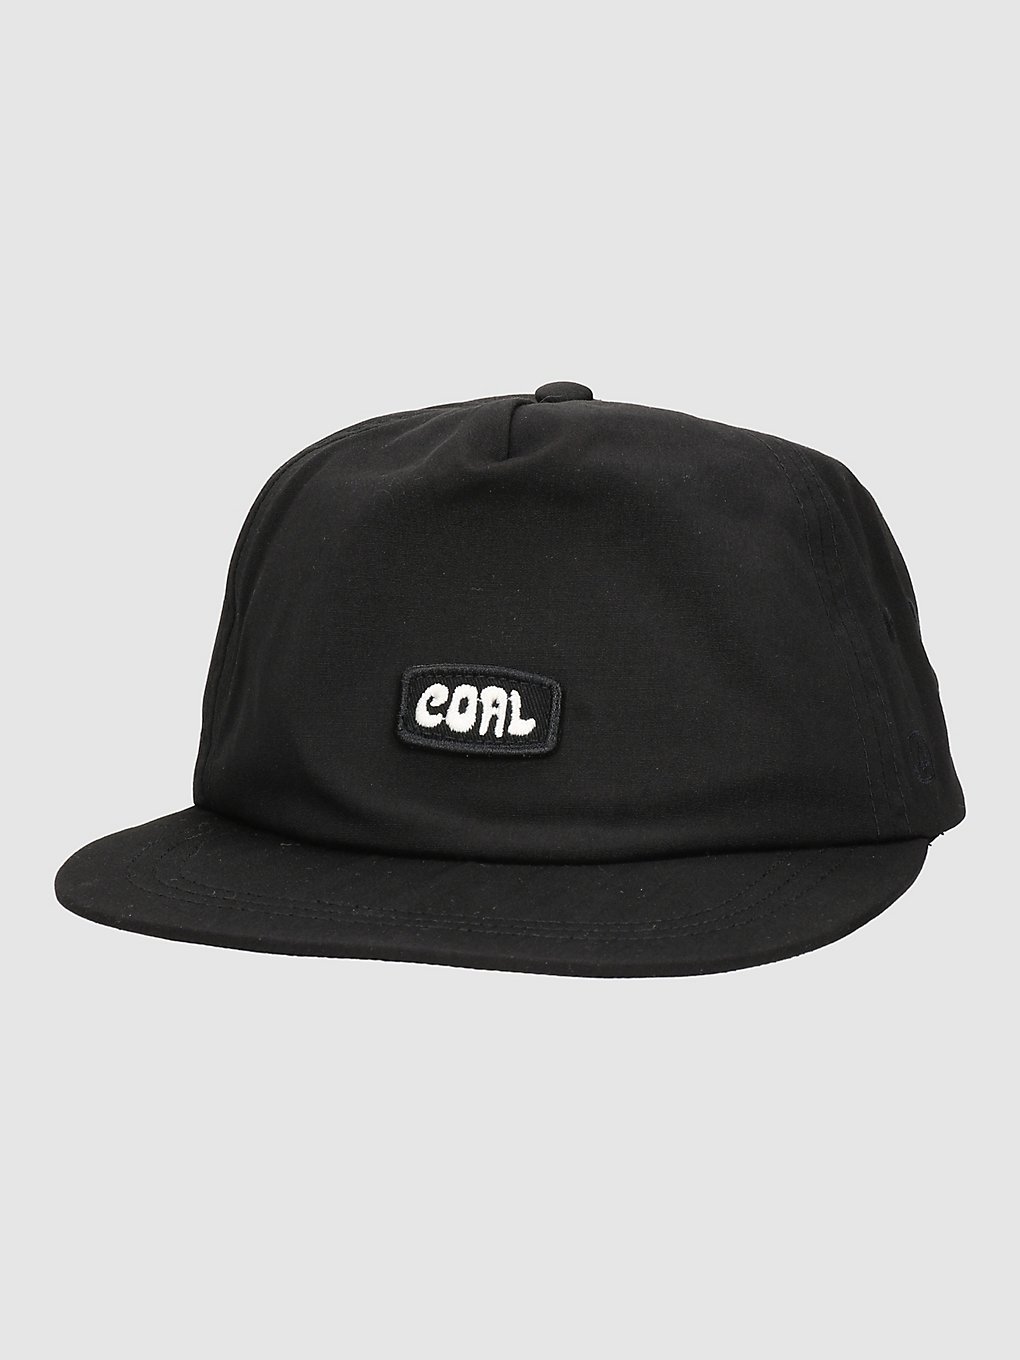 Coal Hardin Cap black kaufen